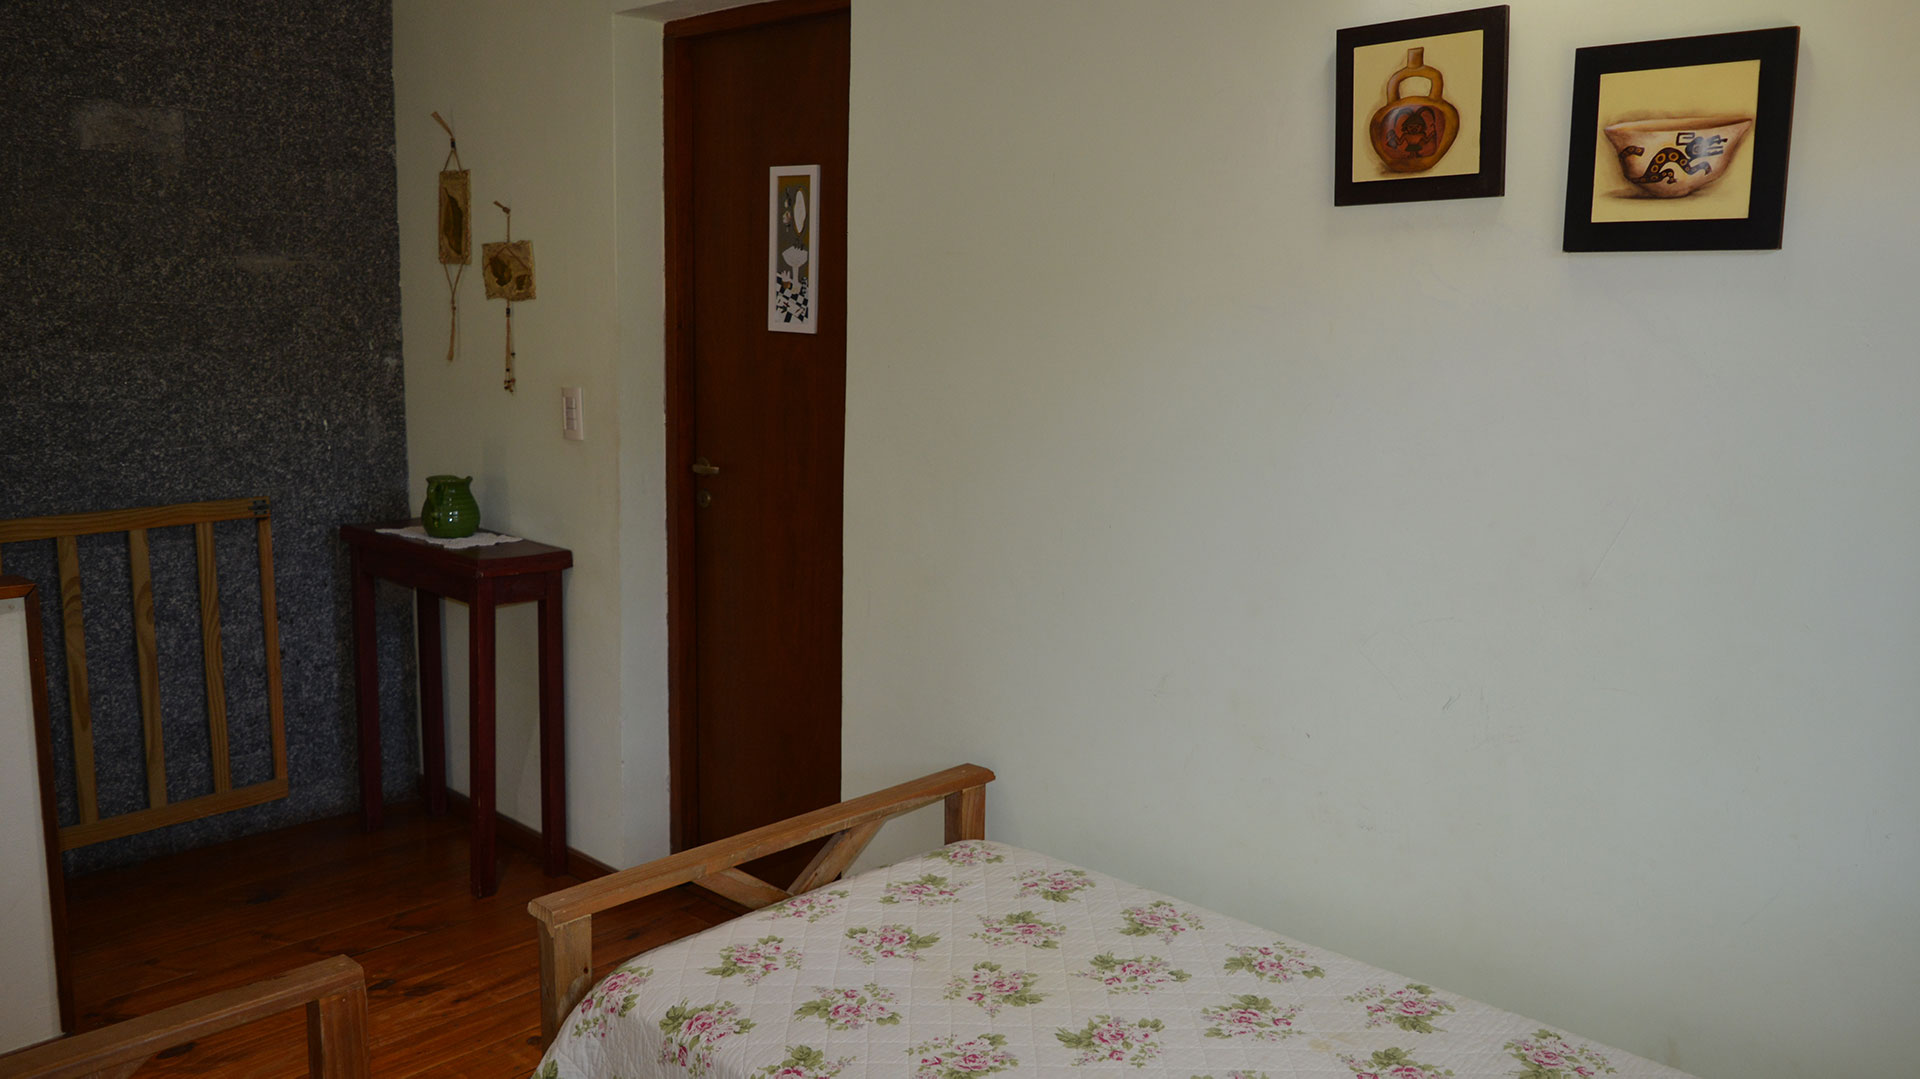 Dormitorio individual 3 Apart Cipres La Serena de las Pampas